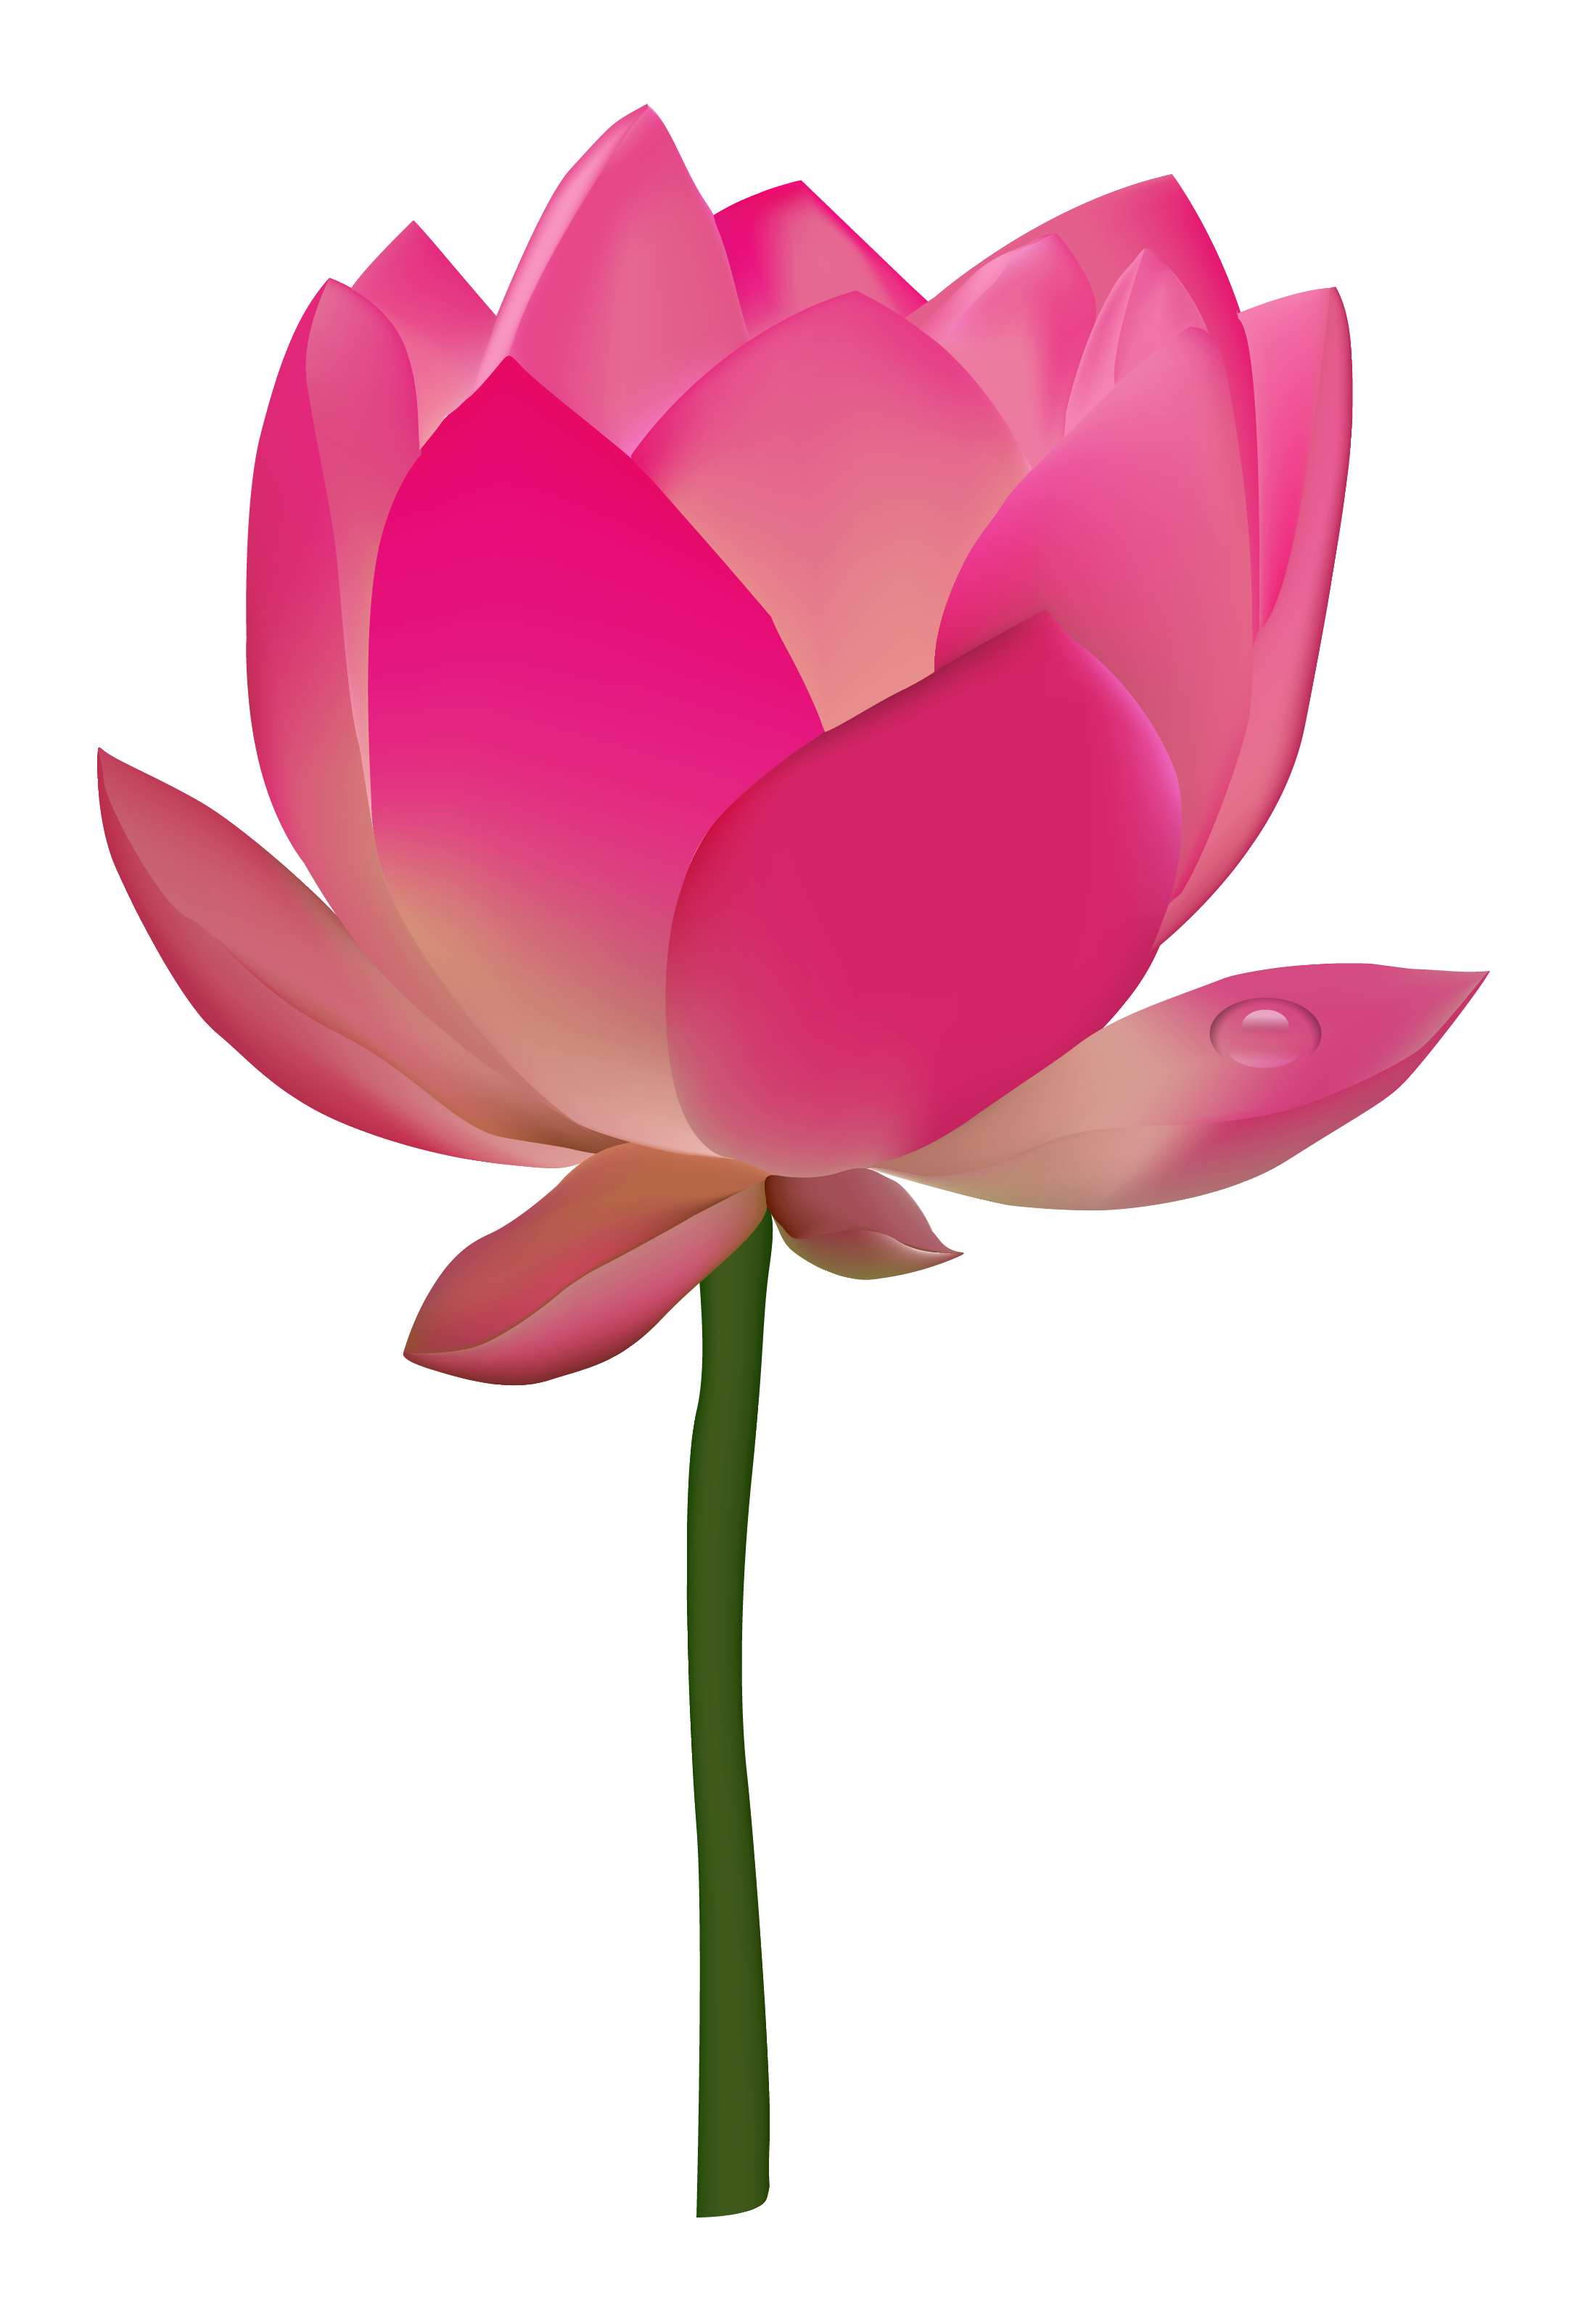 Lotus Flower PNG HD - 130875